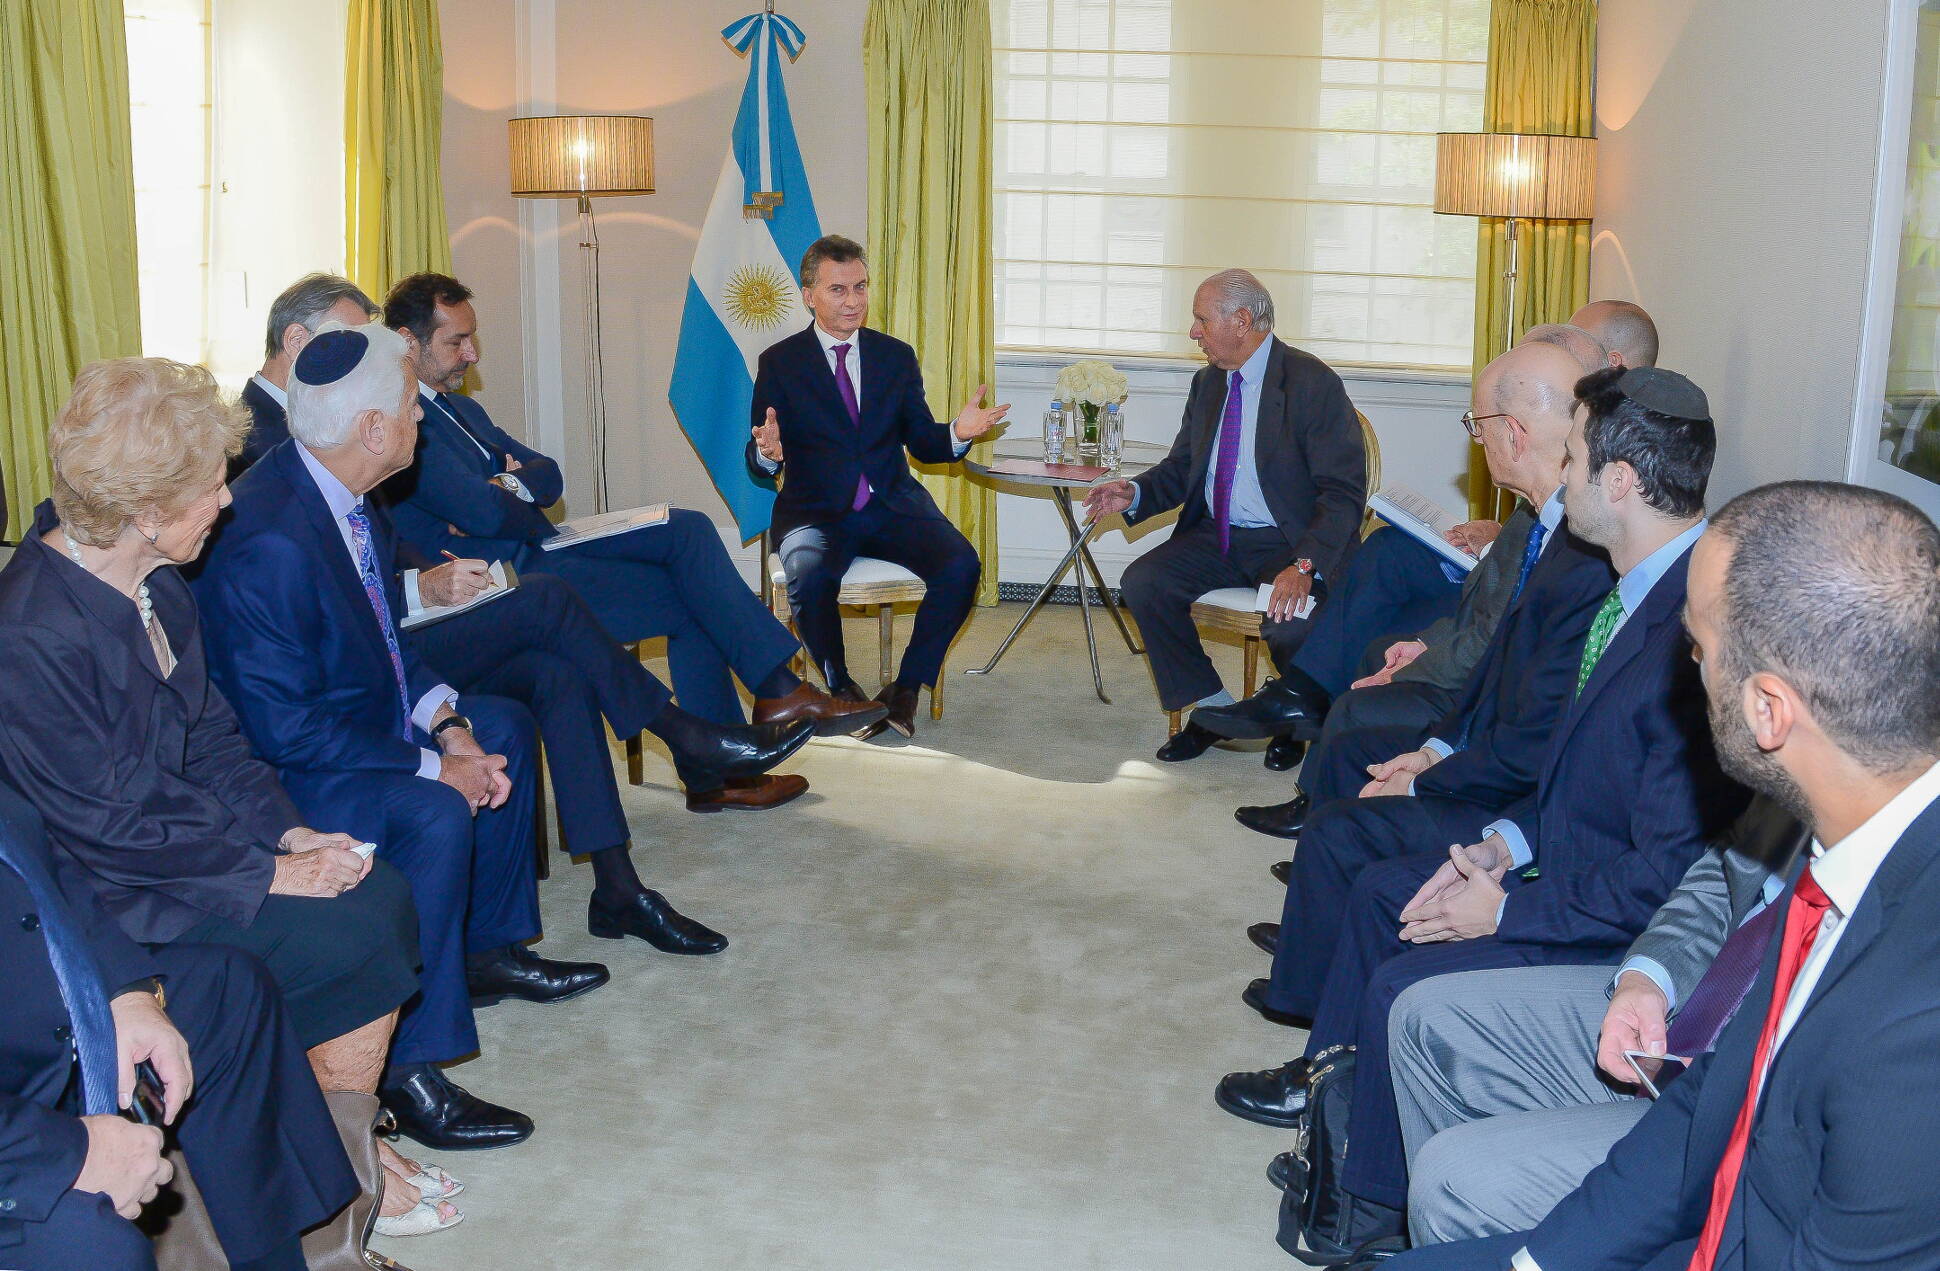 El presidente Macri se reunió con organizaciones de la comunidad judía